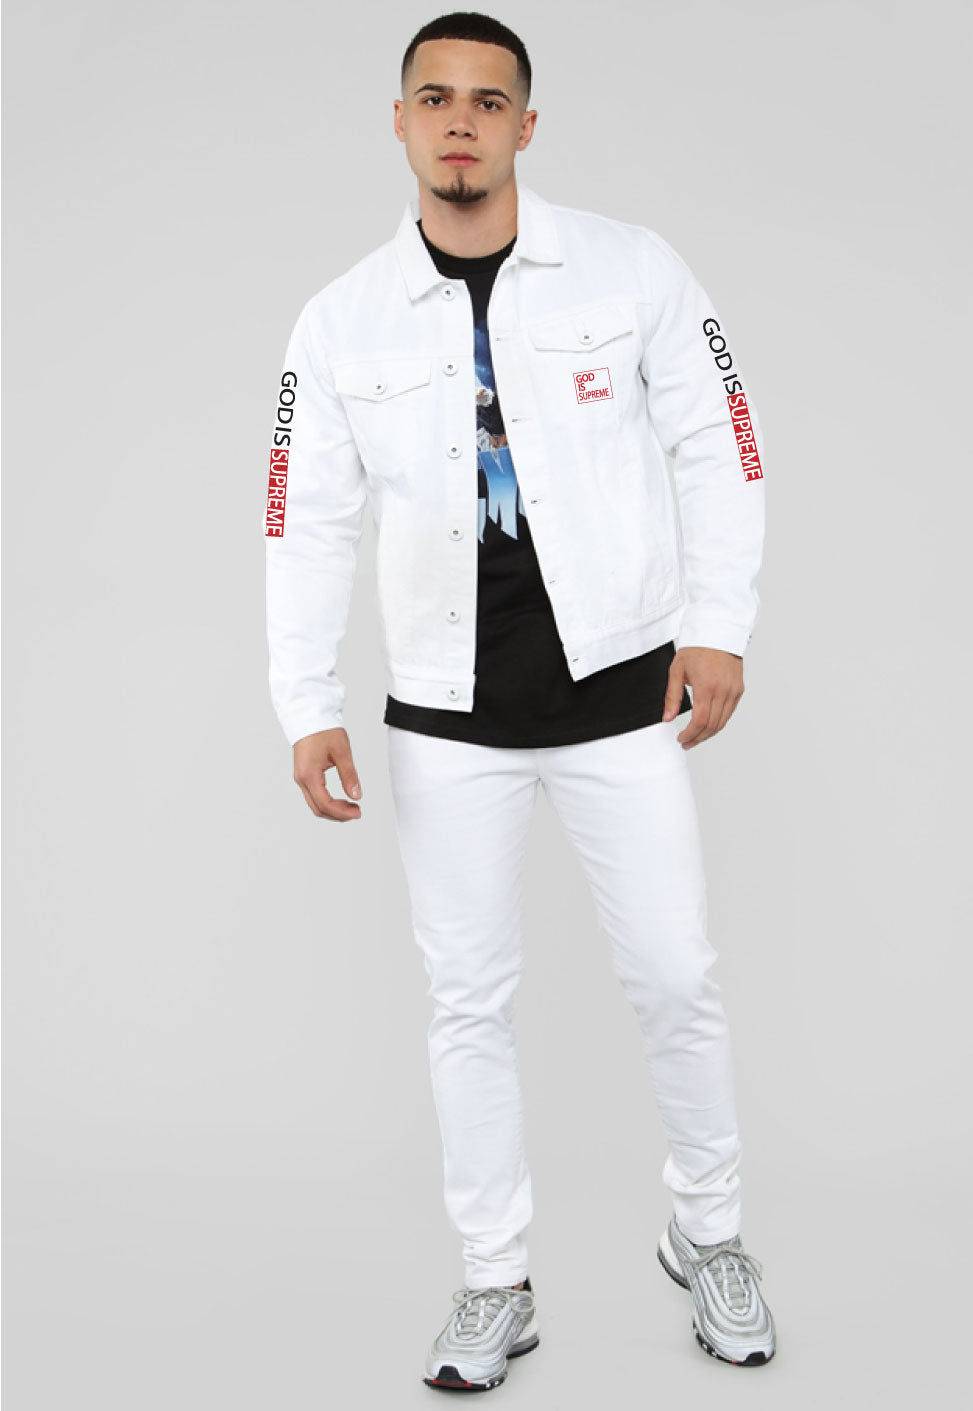 supreme white denim jacket